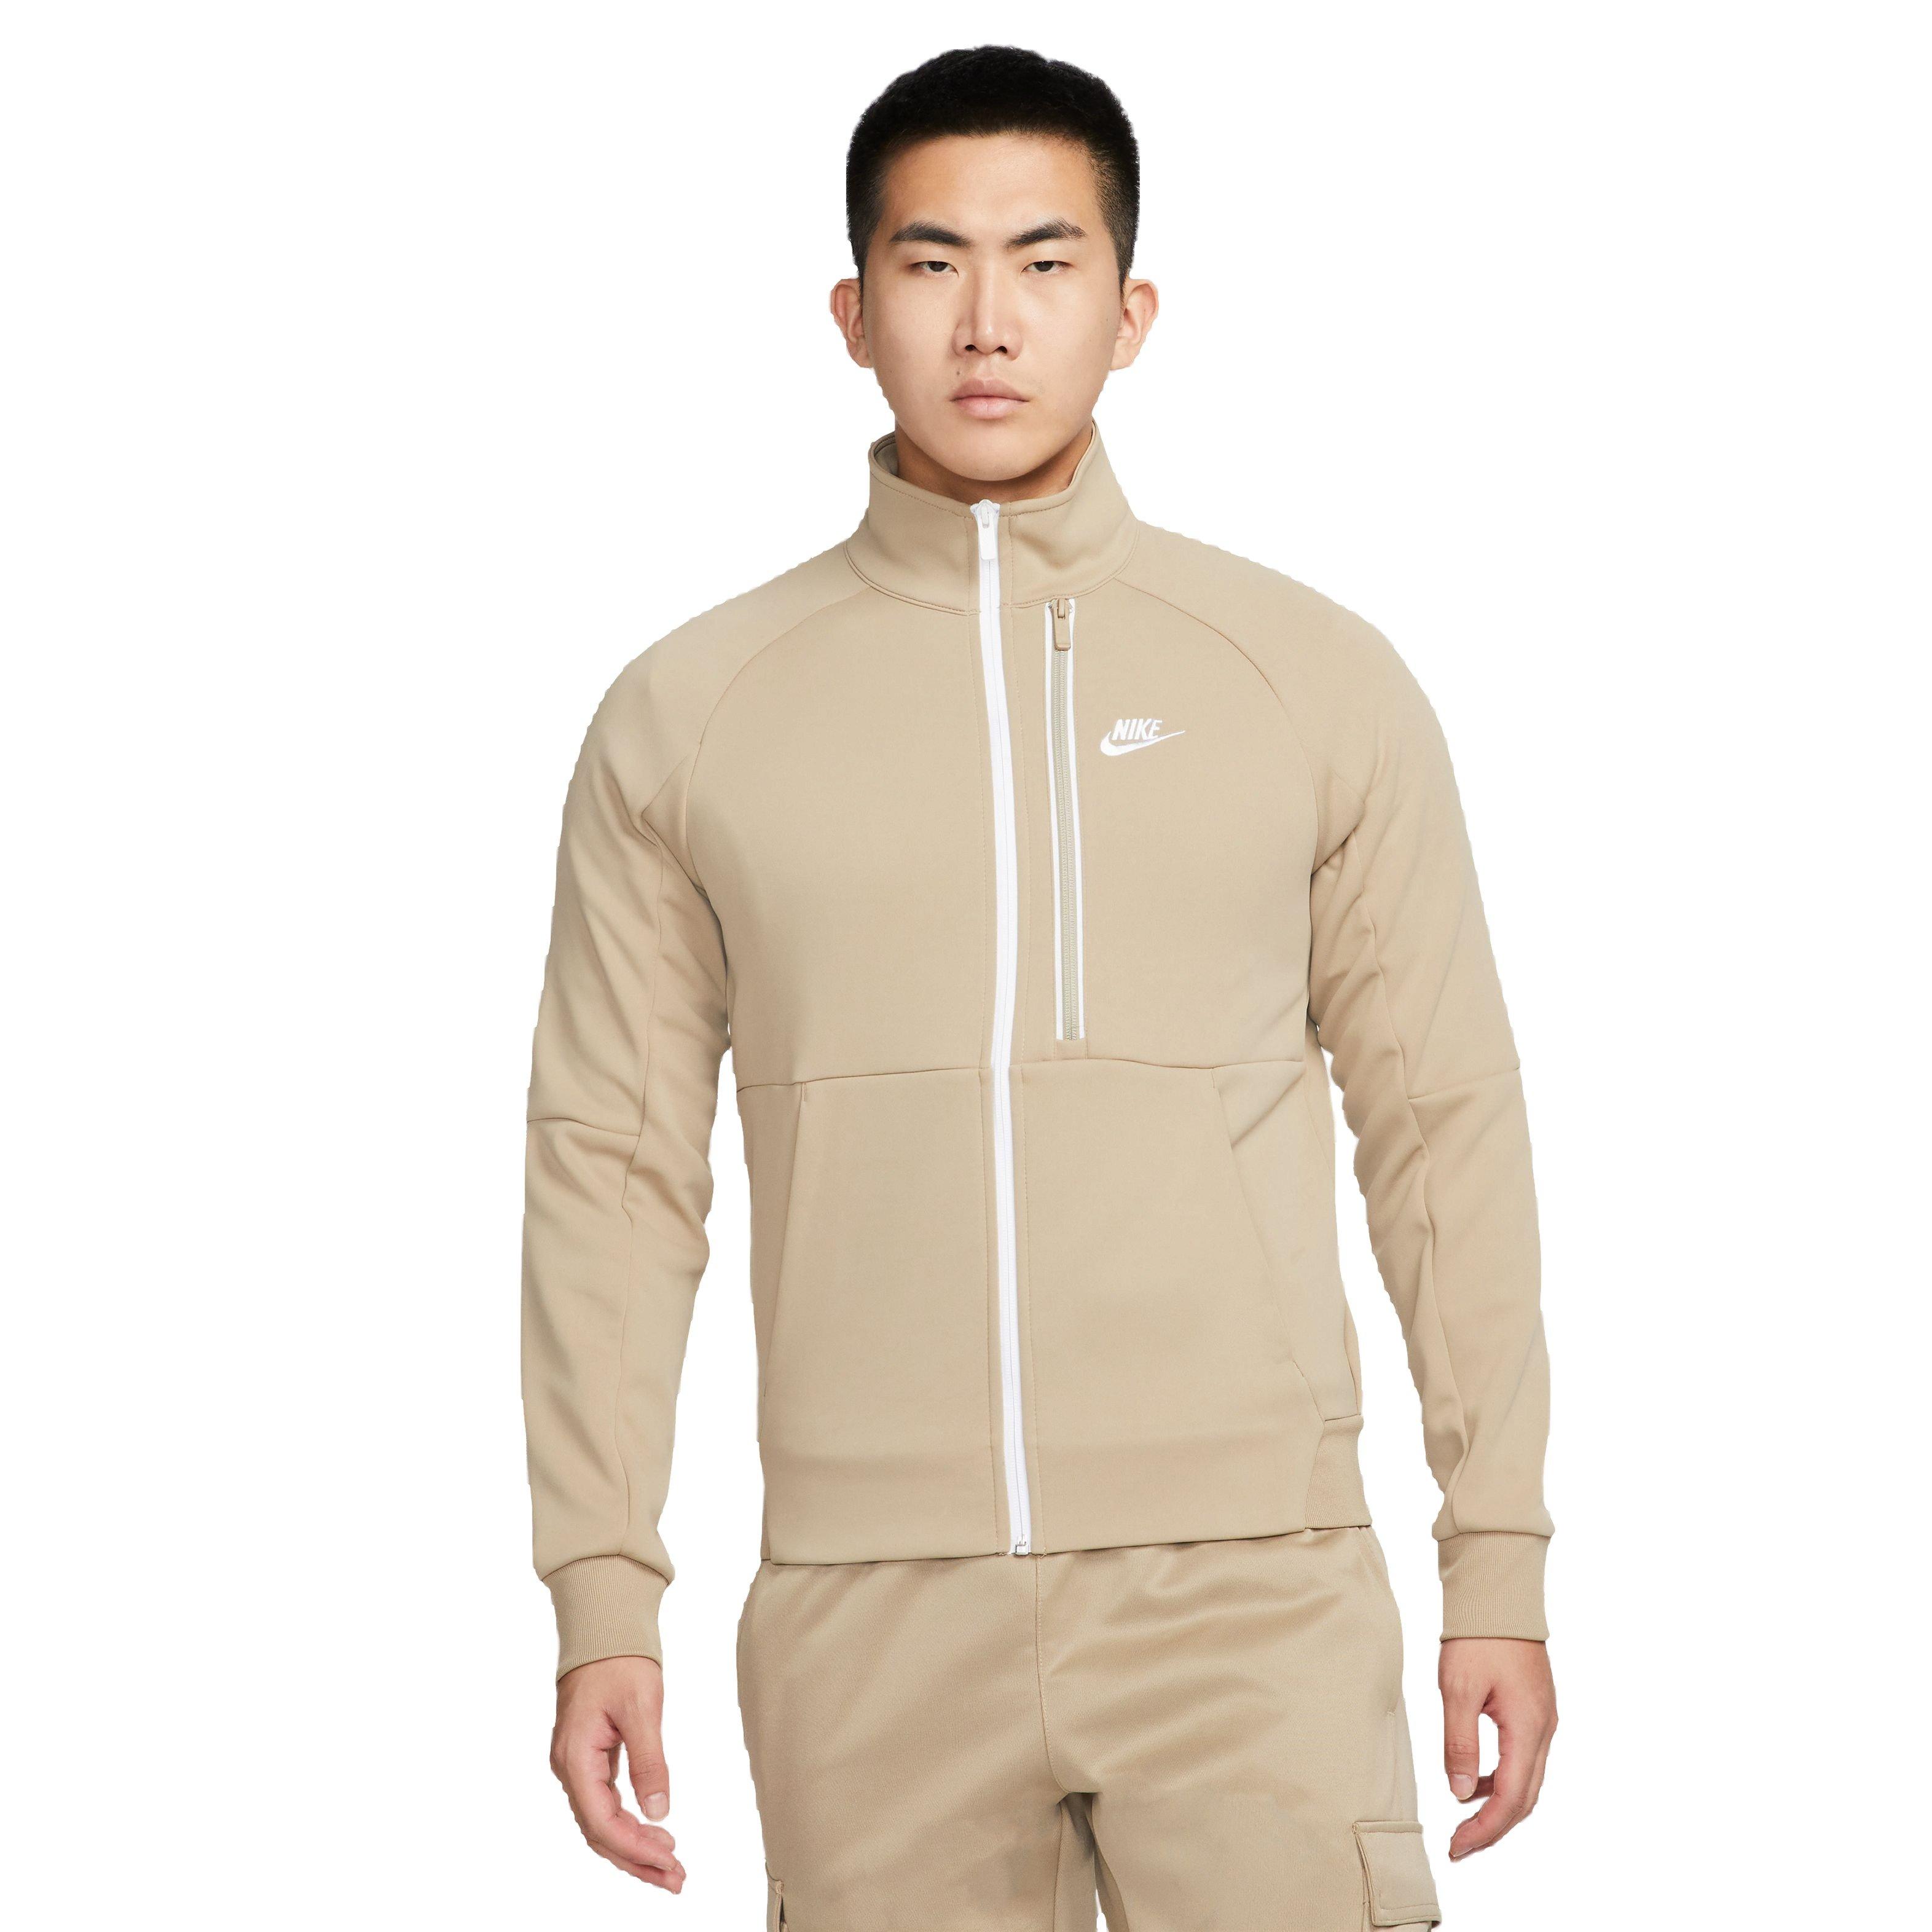 Stoel Een zin Gepland Nike Men's Sportswear Tribute N98 Jacket-Khaki